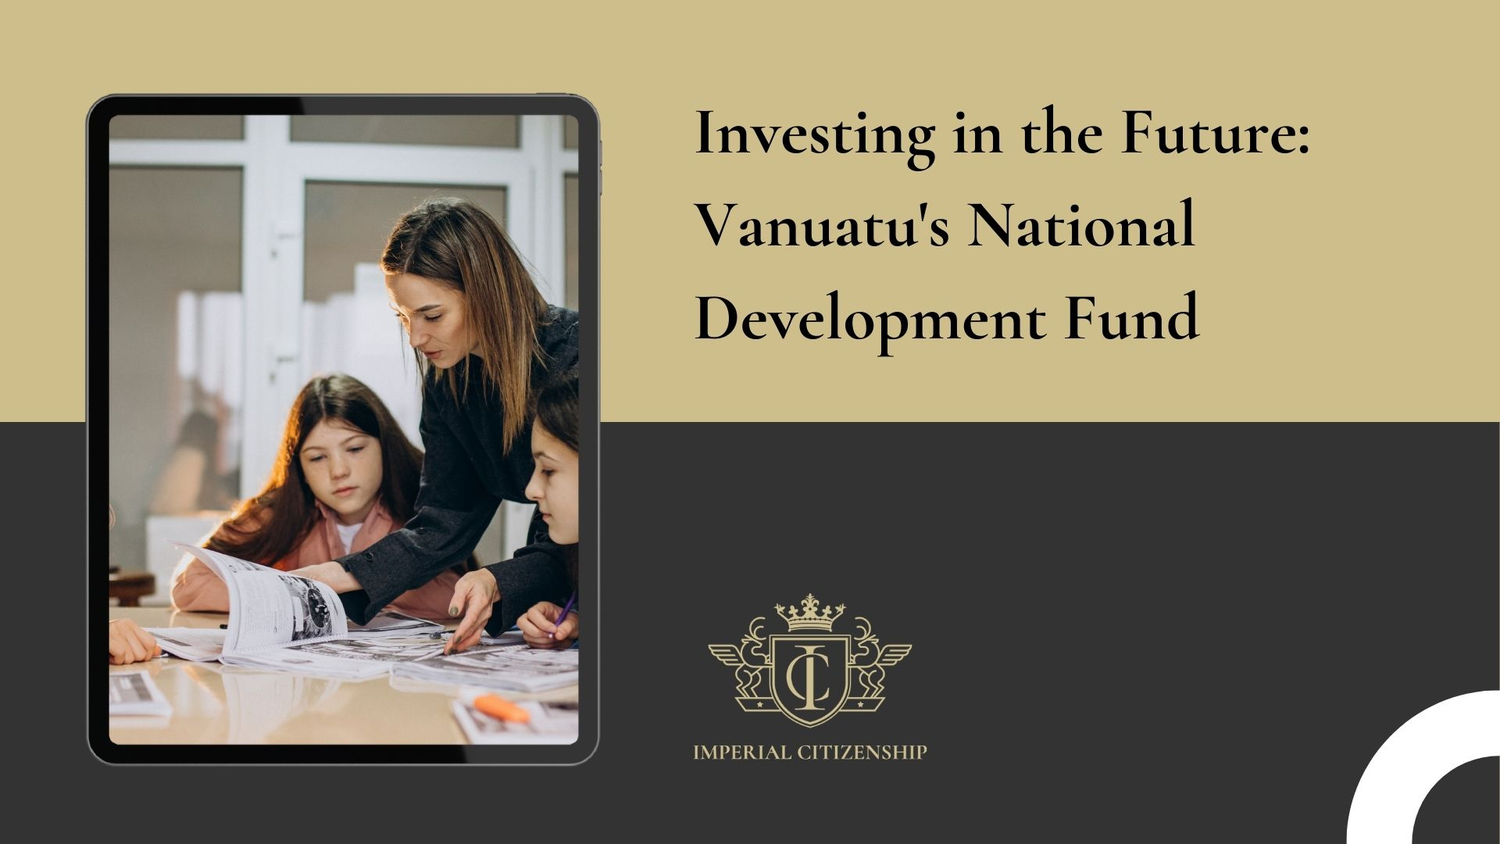 Vanuatu's National Development Fund